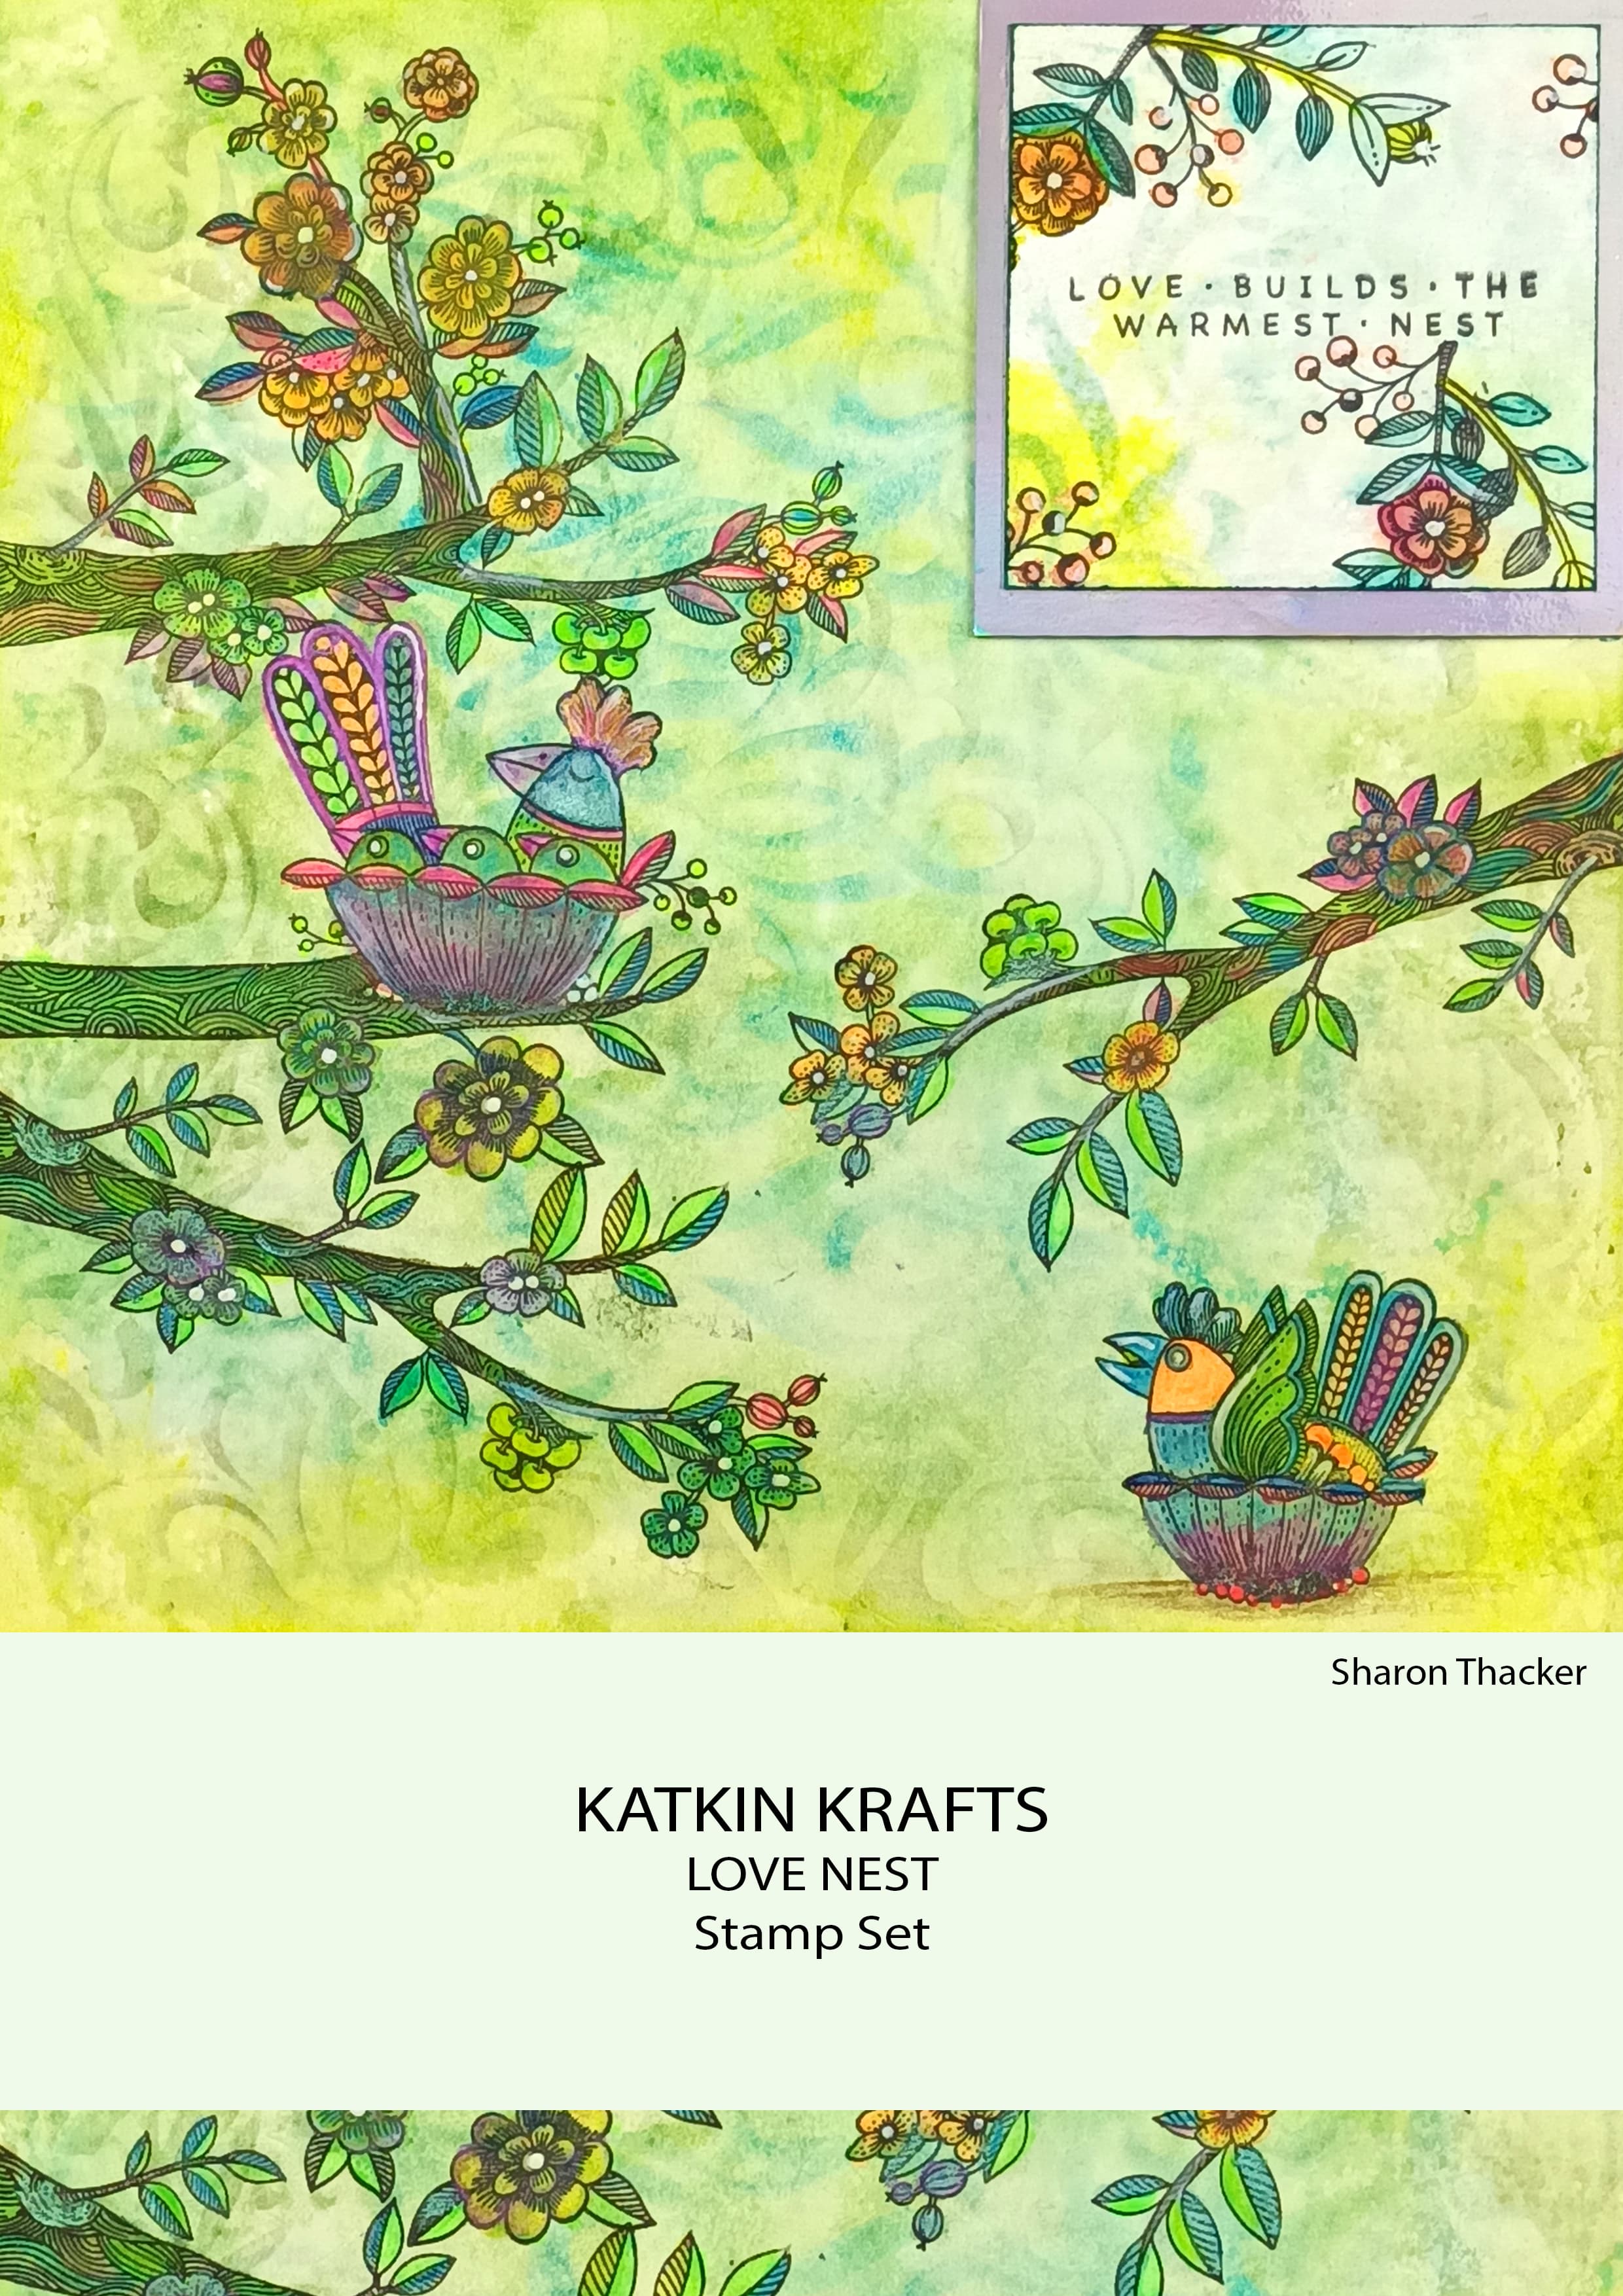 Katkin Krafts Love Nest 6 in x 8 in Clear Stamp Set